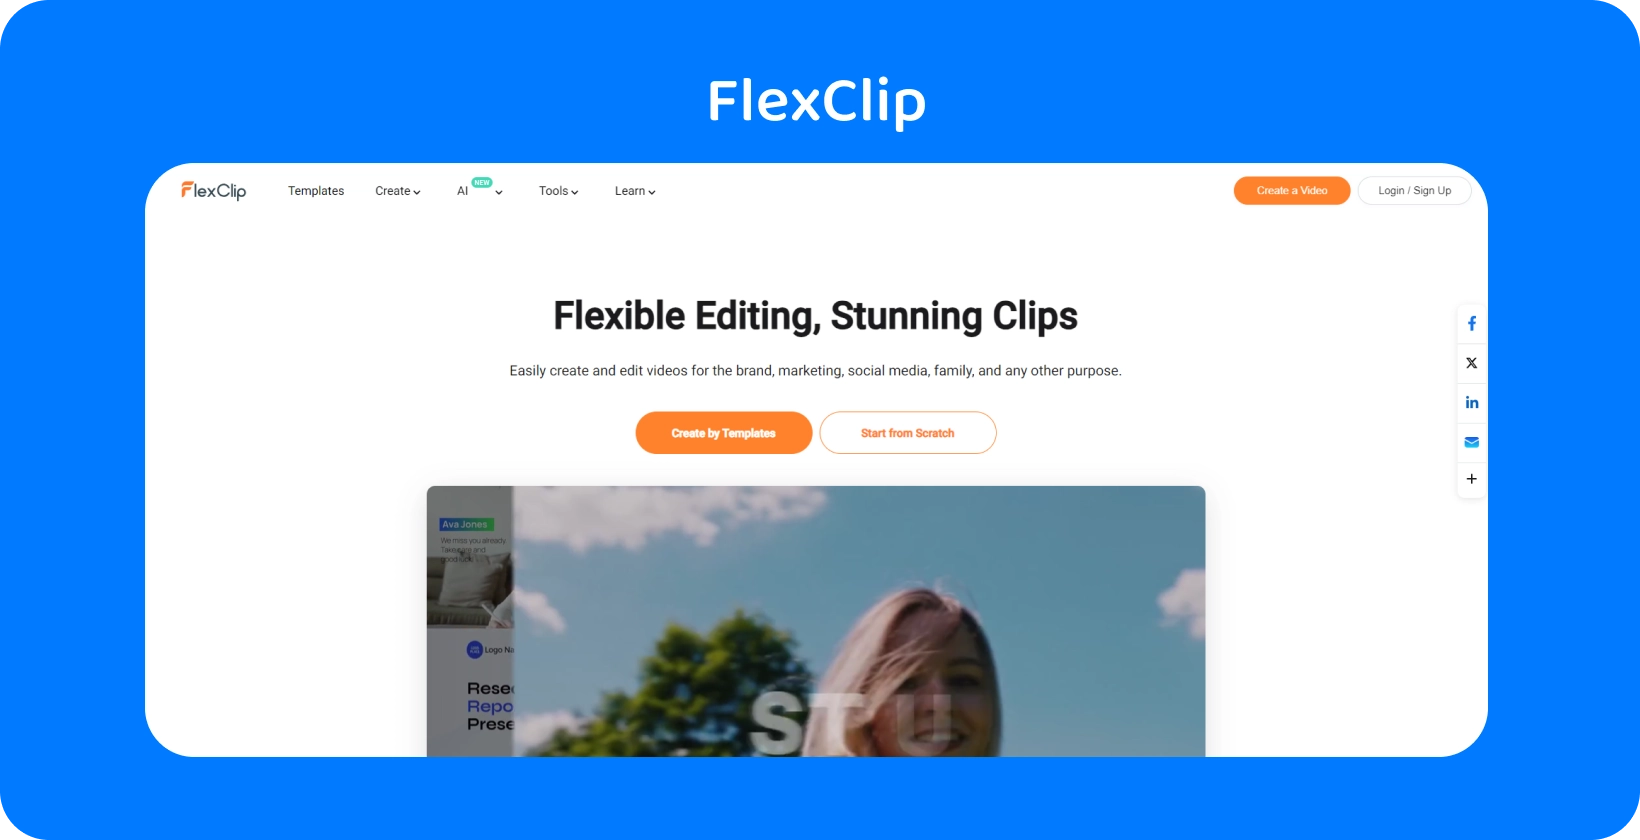 تعرض واجهة صانع فيديو تحويل النص إلى كلام في FlexClip طريقة بسيطة وفعالة لتحويل النص إلى كلام AI واقعي.